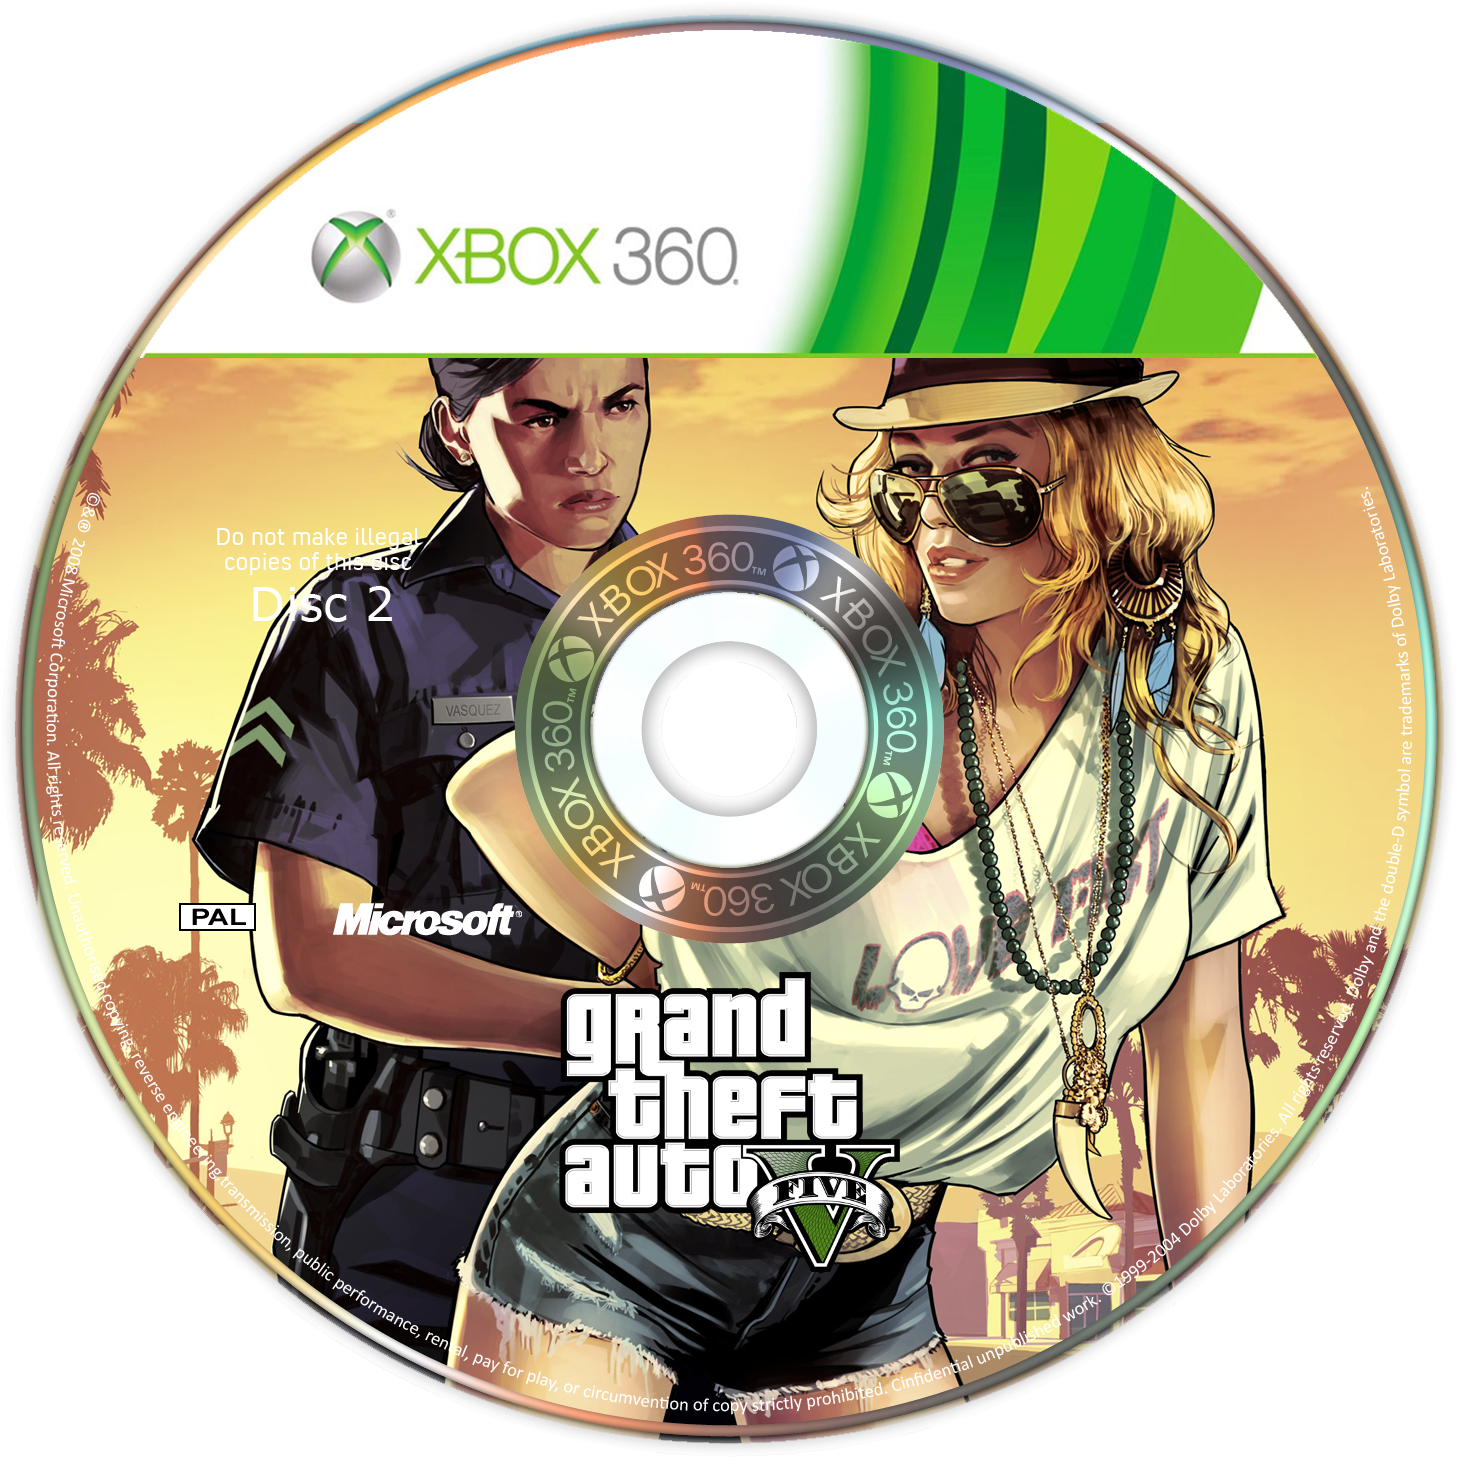 GTA V Disc 2 box cover